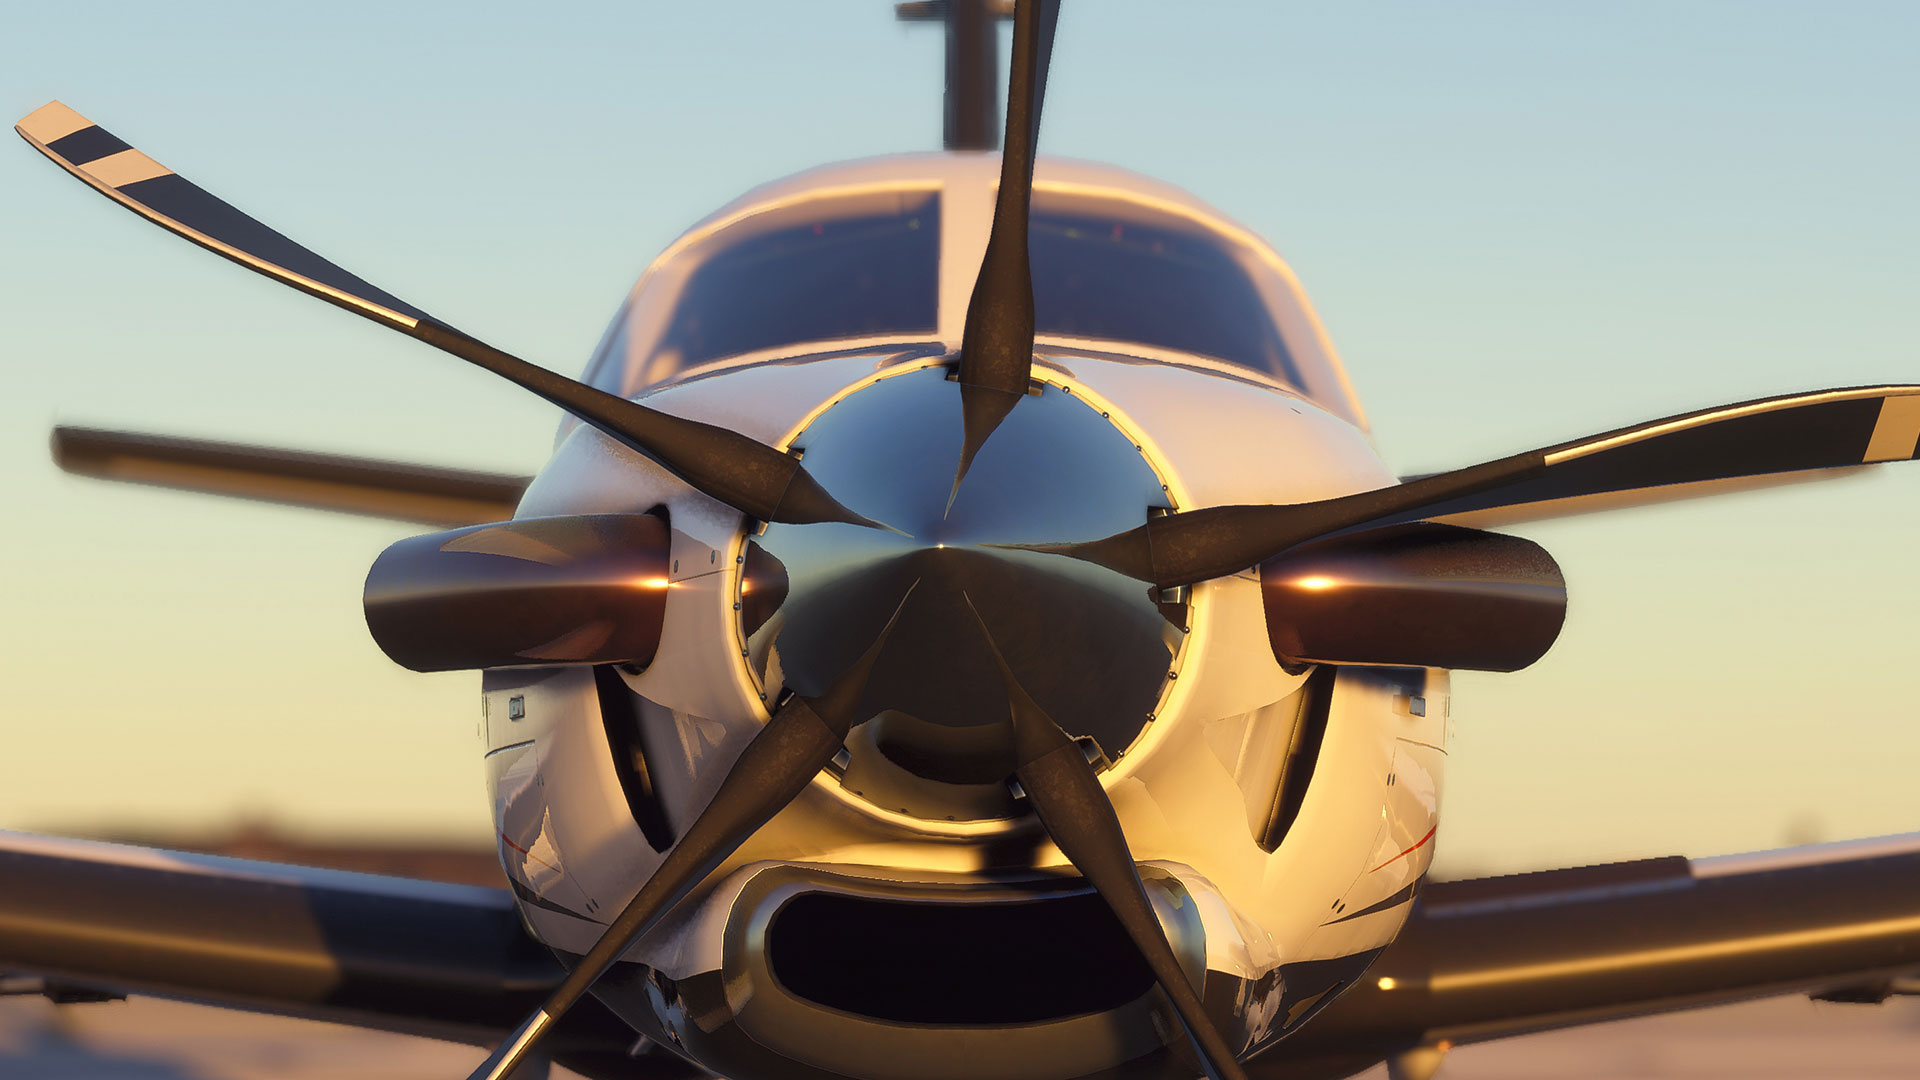 Flight Simulator: Veja comparativos de imagens do jogo e voos reais